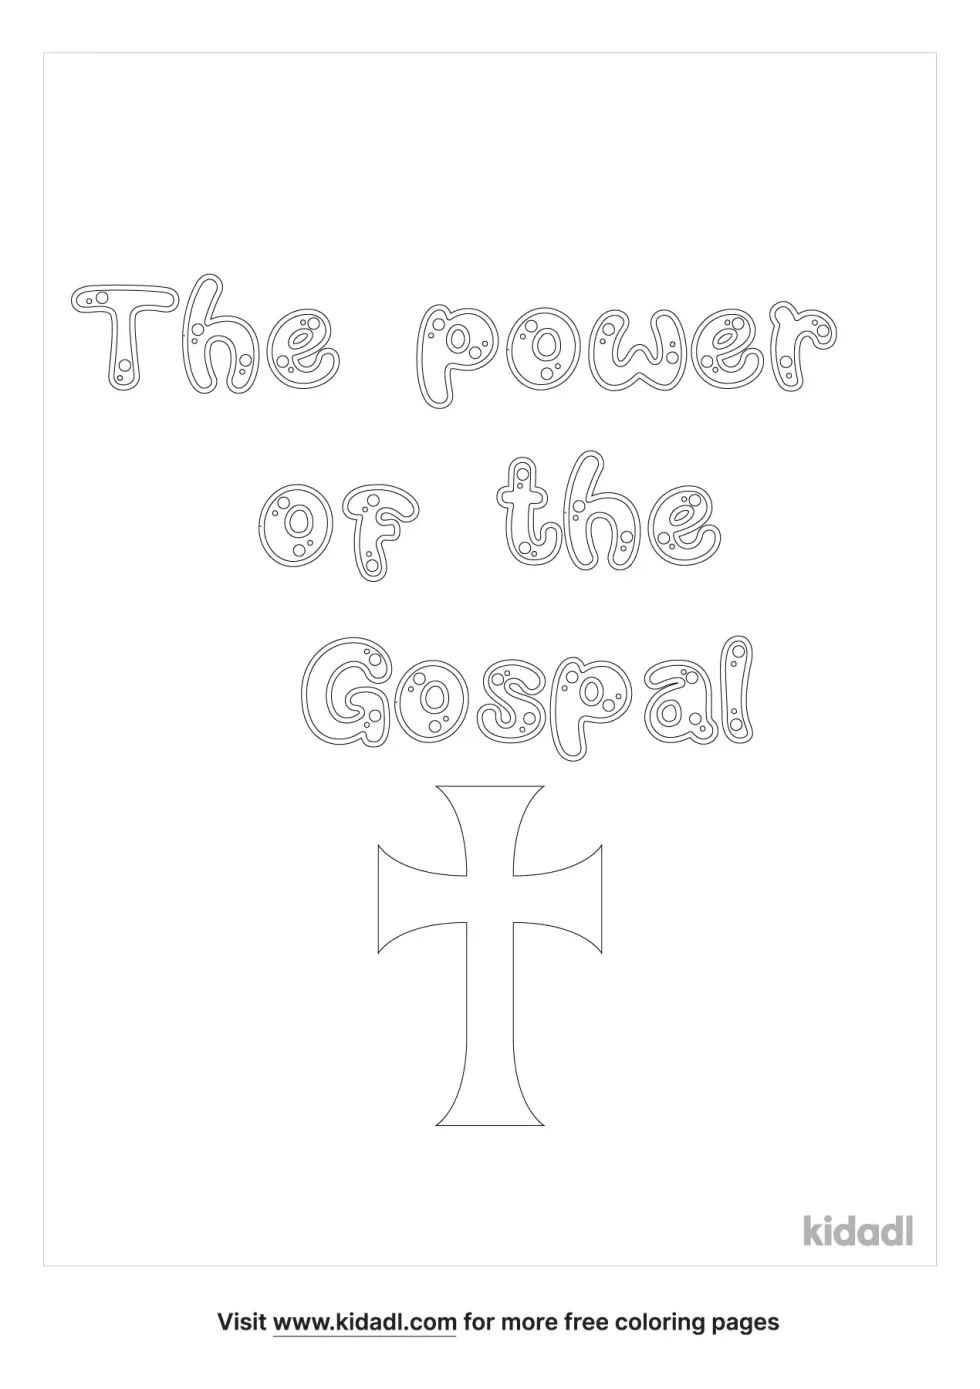 Power Of The Gospel